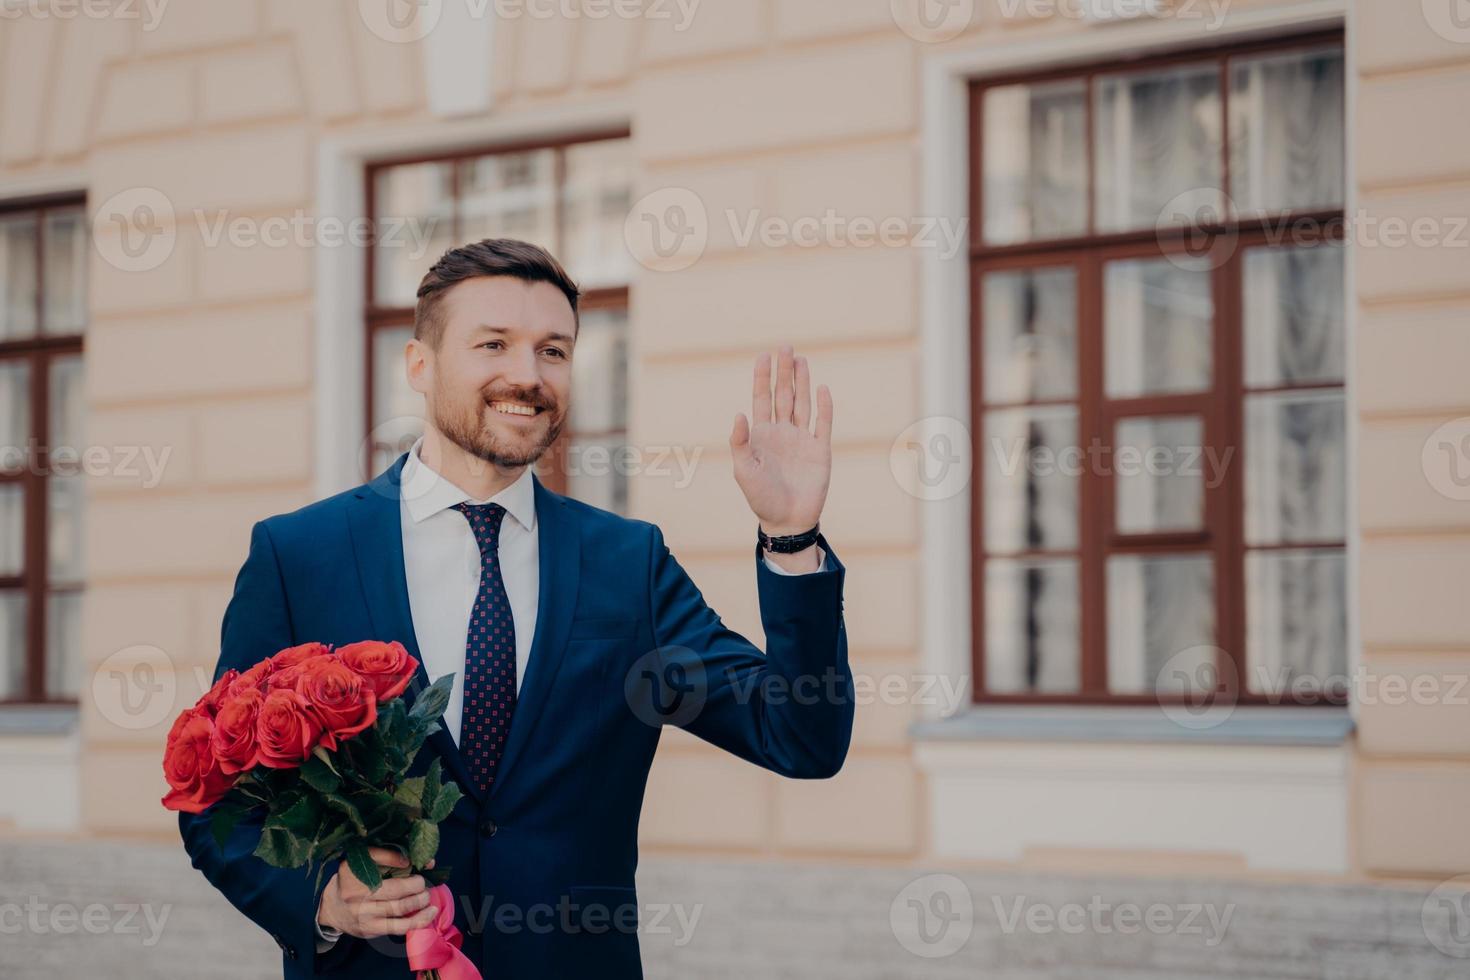 beau jeune homme en costume avec bouquet de roses saluant son partenaire commercial avec bouquet de roses rouges photo